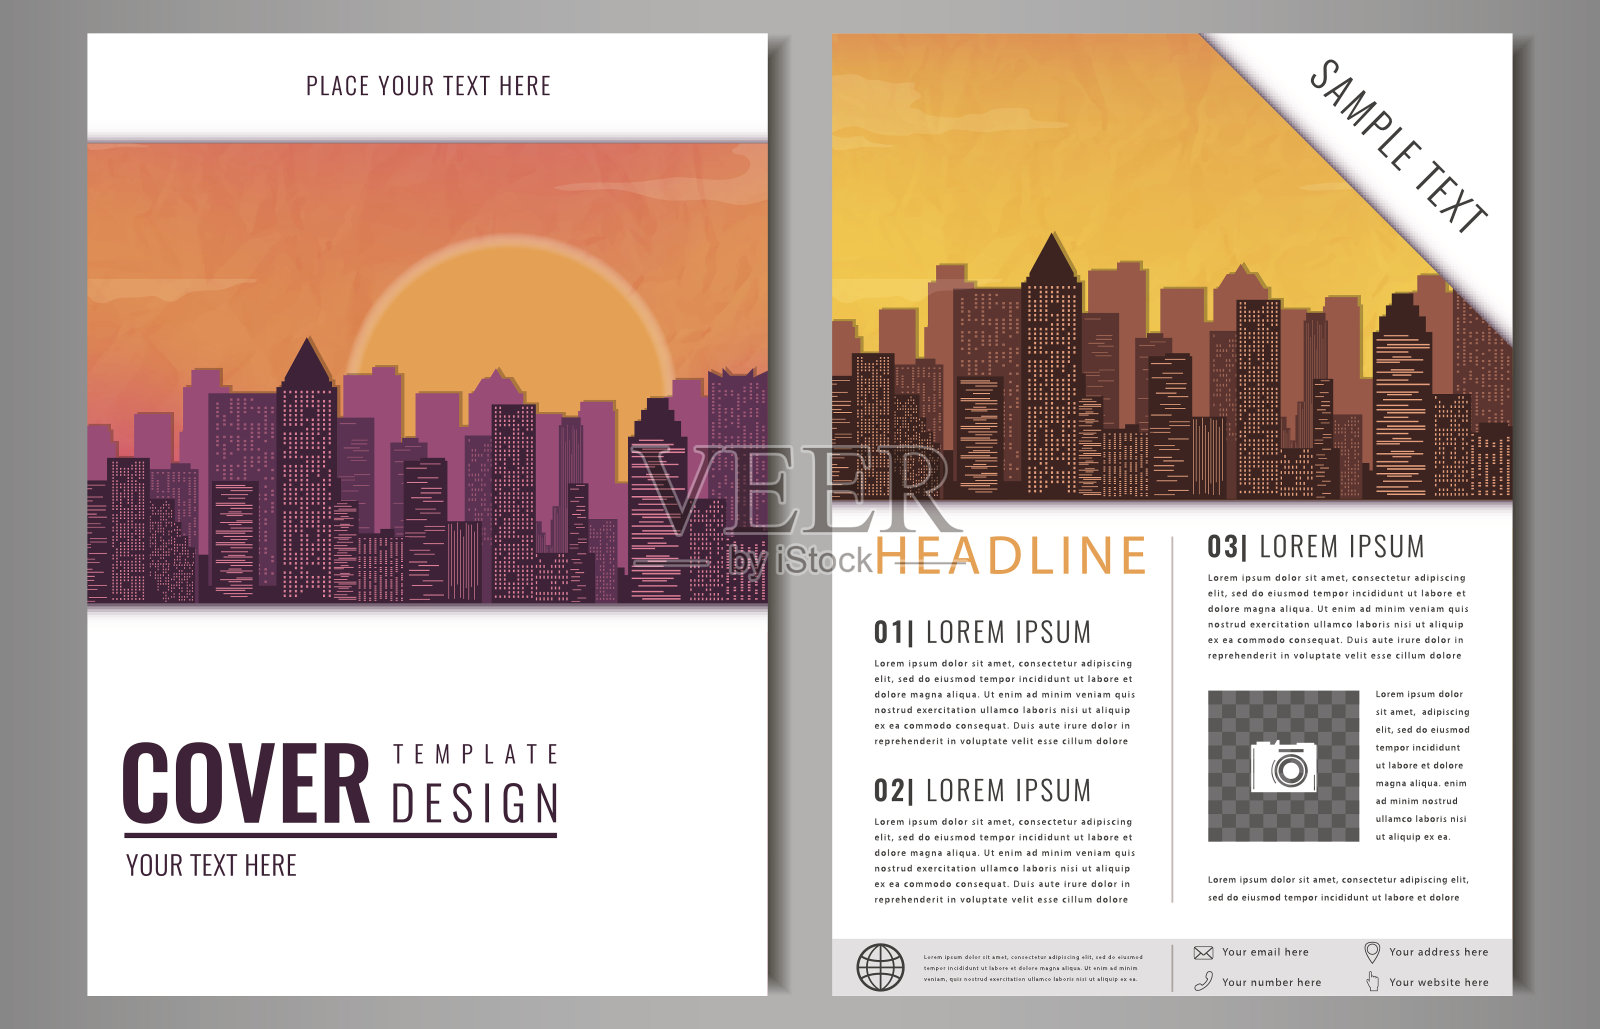 宣传册传单设计模板。单张封面介绍，以扁平城市为主设计模板素材